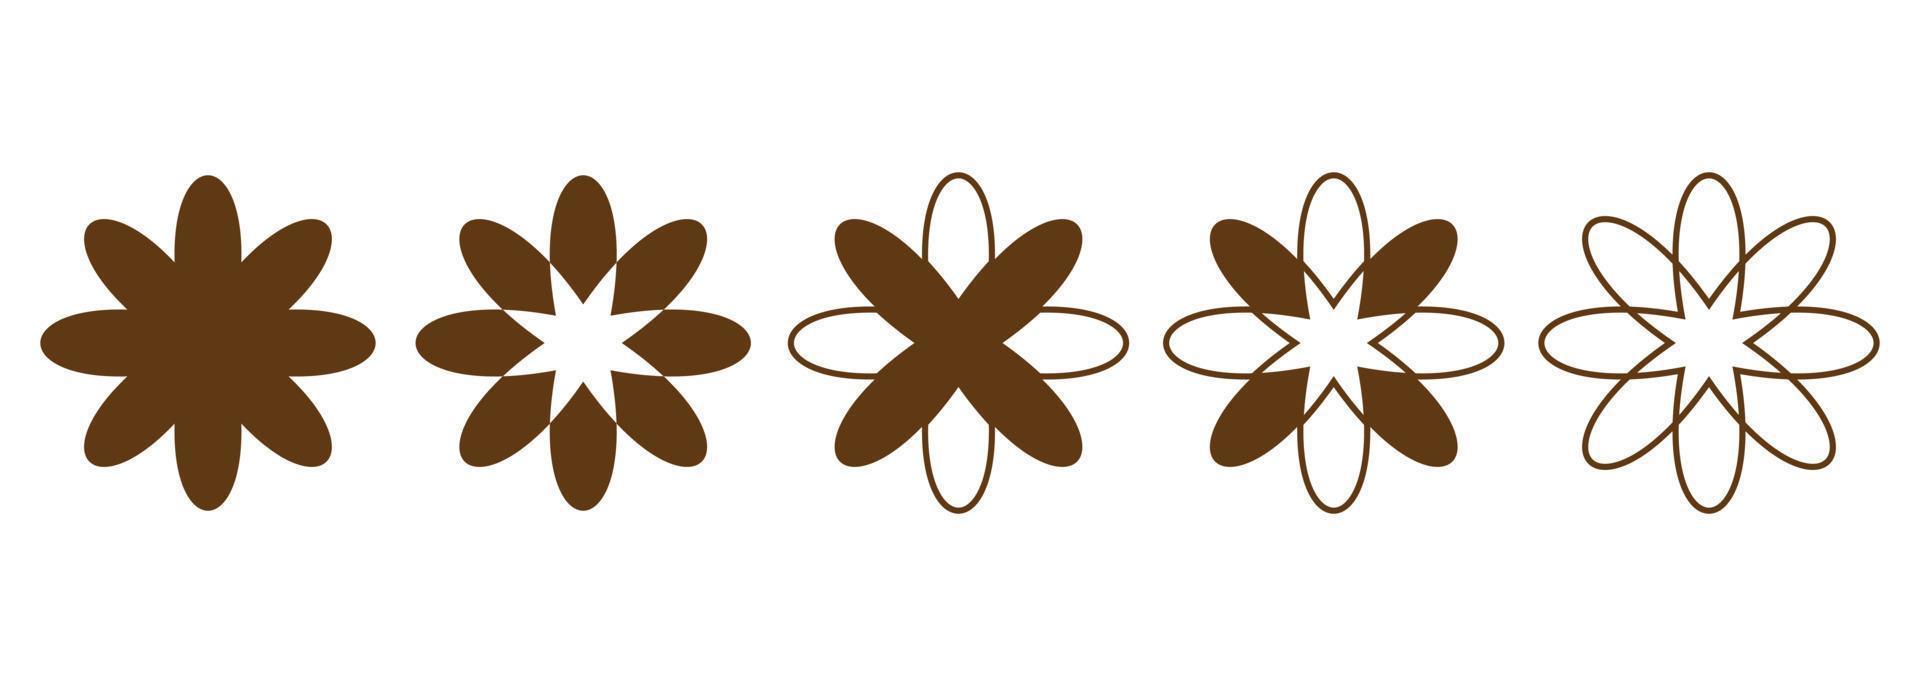 ensemble de radial floral géométrique formes. floral Icônes pour logo, tatouage, l'image de marque, emballage, social médias des postes. vecteur illustration.